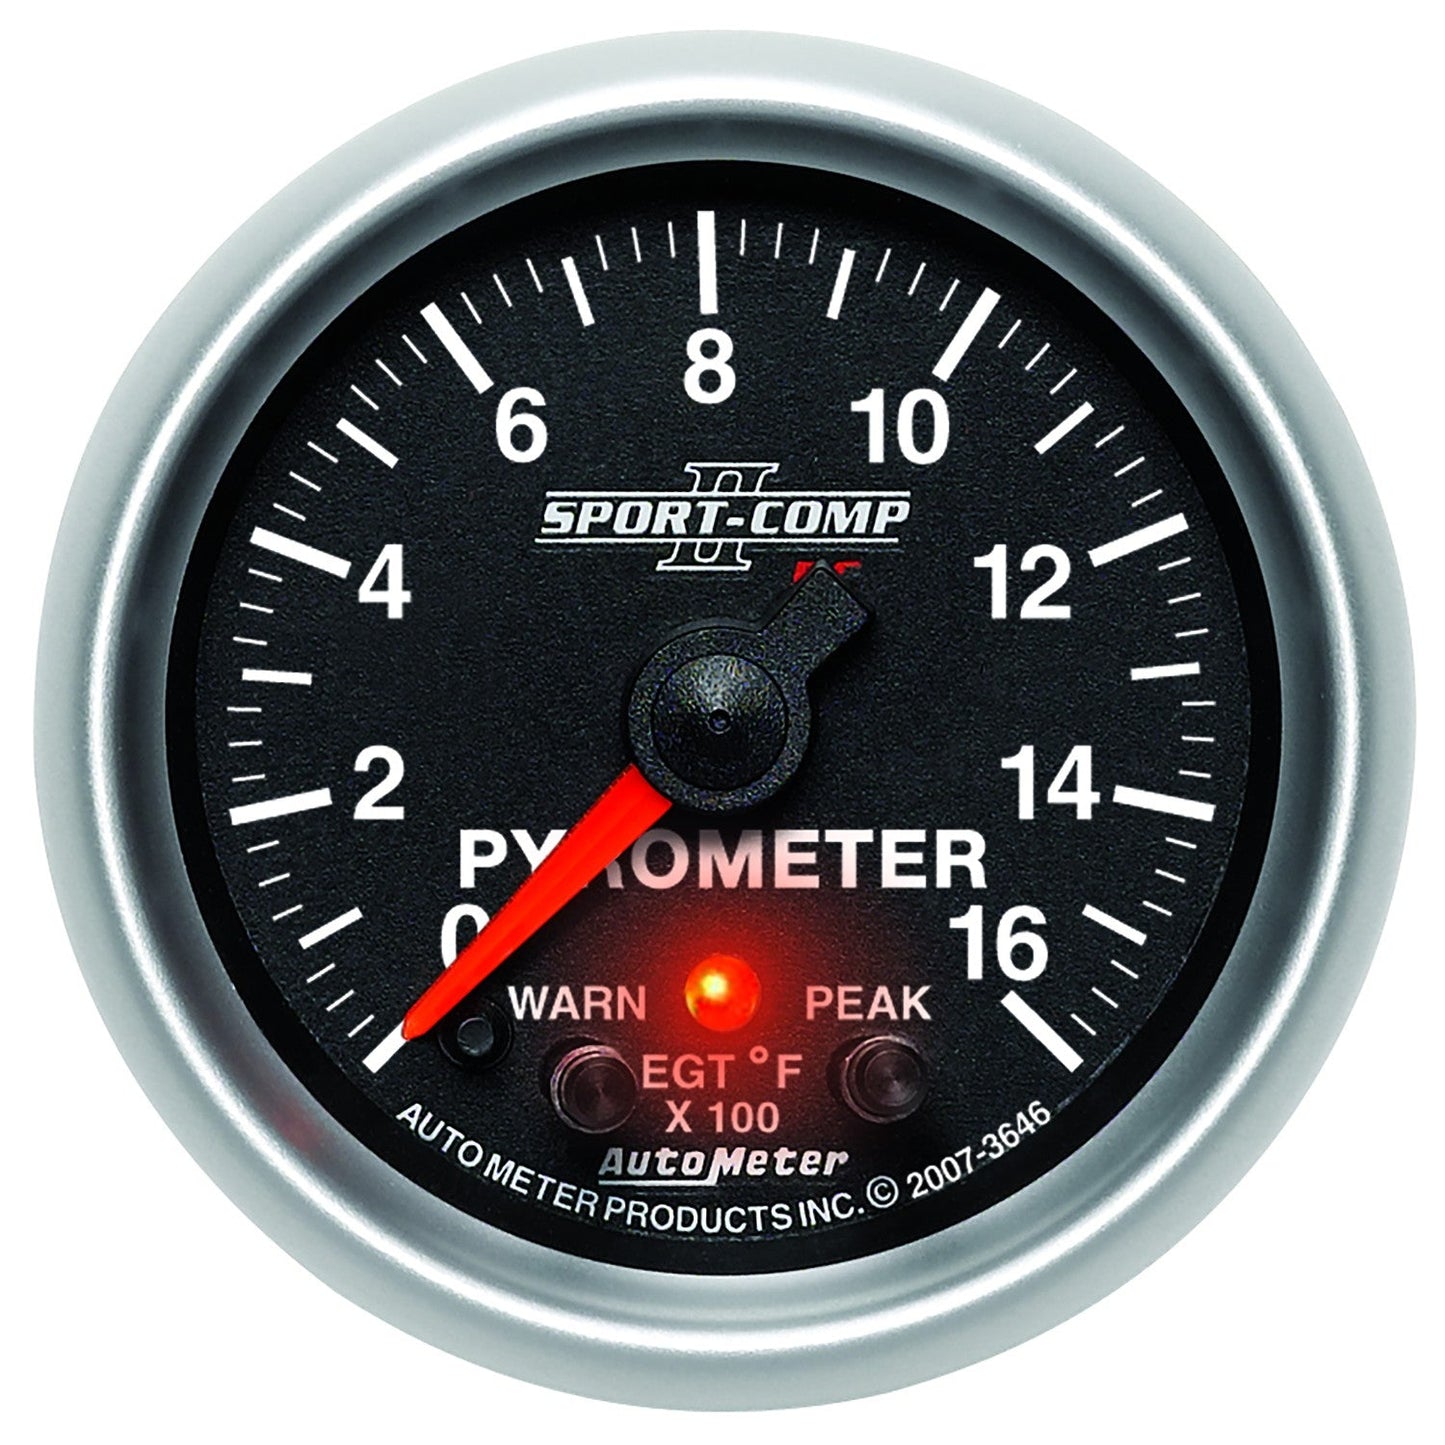 AutoMeter - PIRÓMETRO DE 2-1/16", CON PICO Y ADVERTENCIA, 0-1600 °F, MOTOR PASO A PASO, SPORT-COMP II (3646)